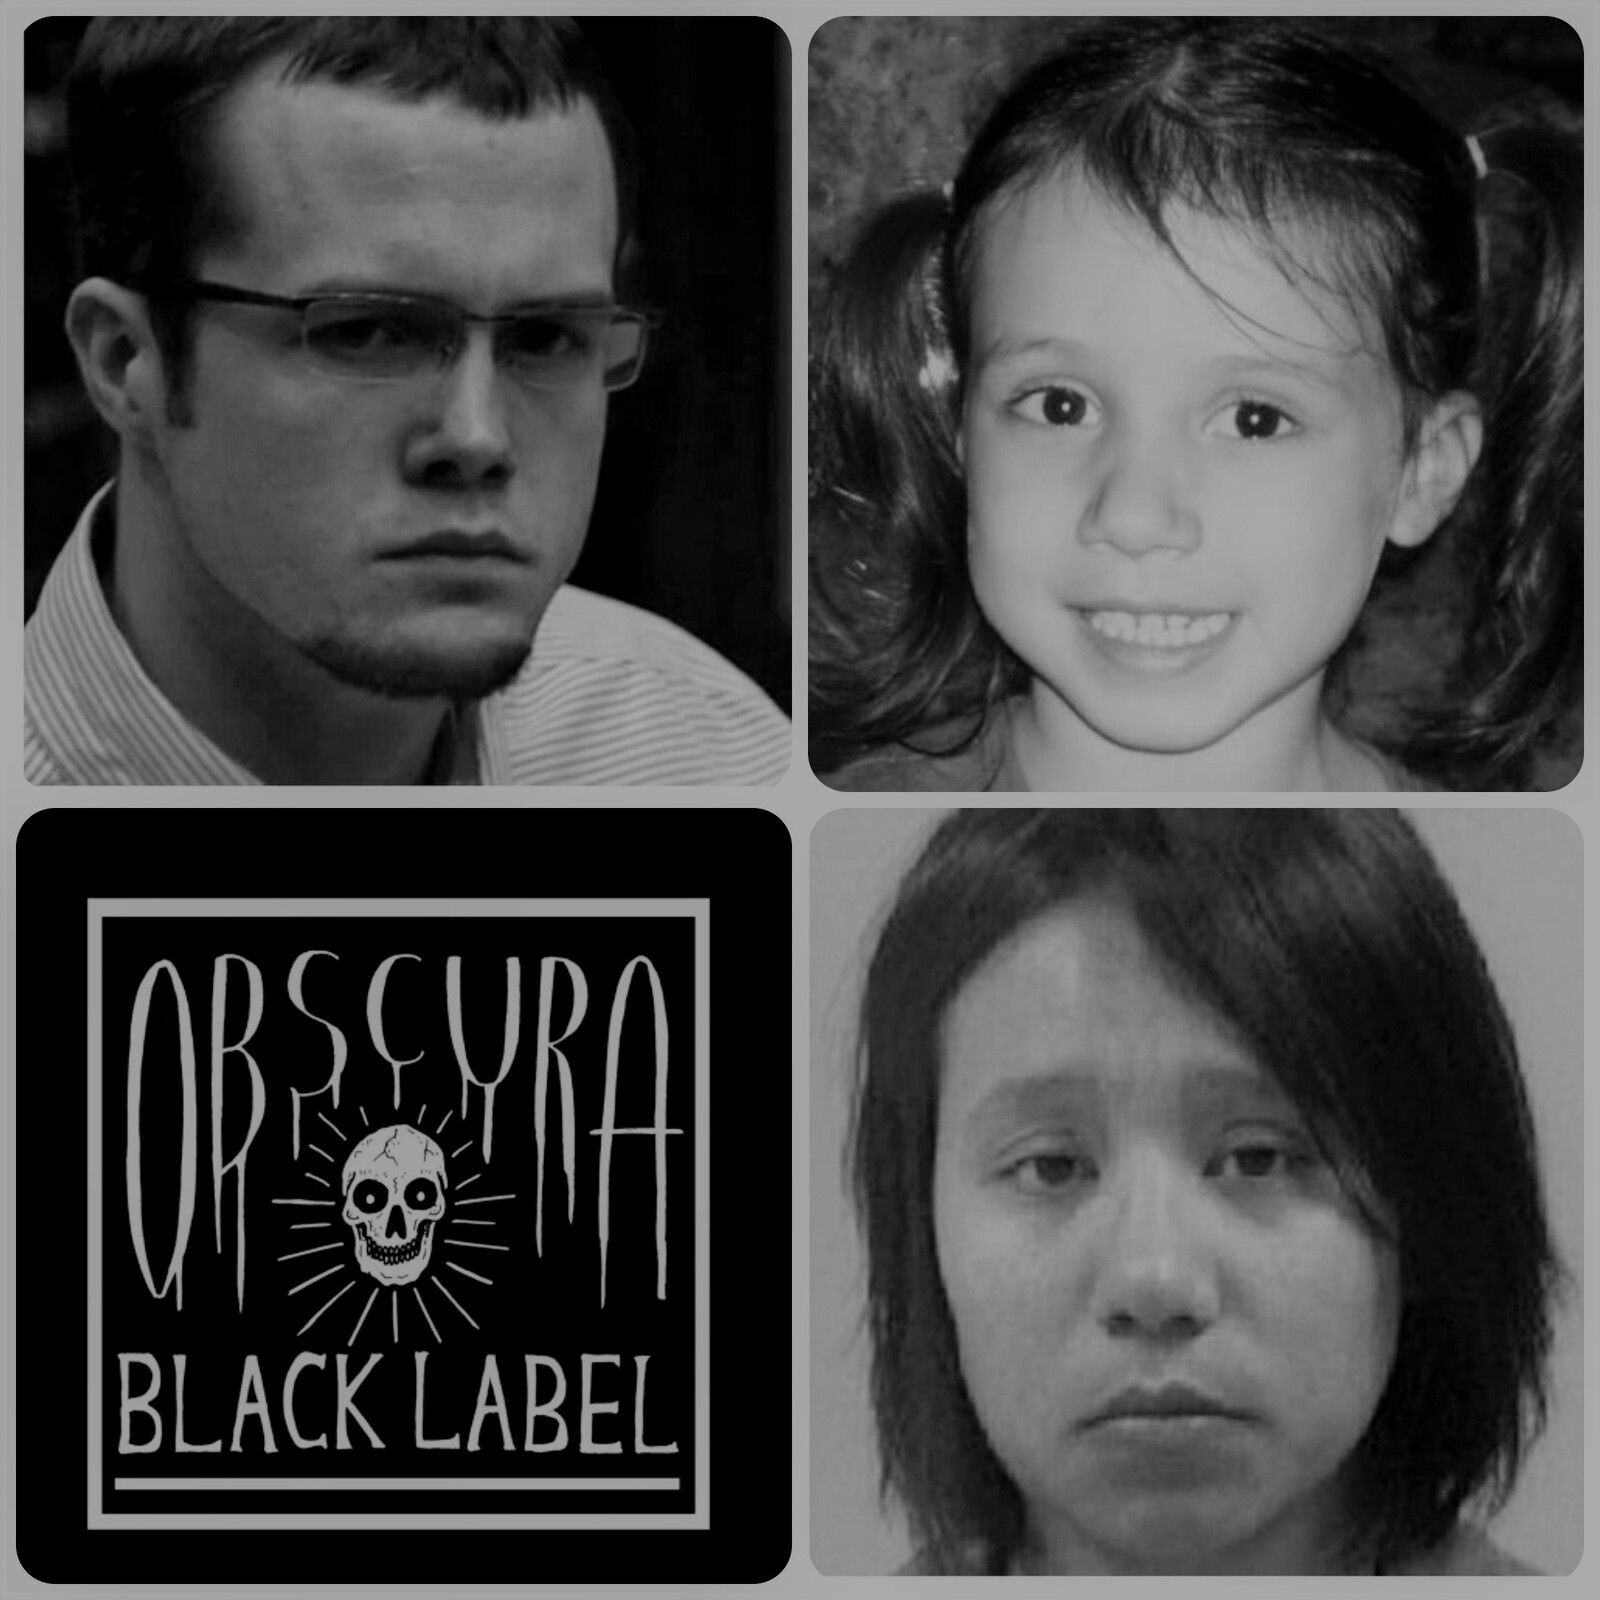 74: Black Label: The Outbuilding